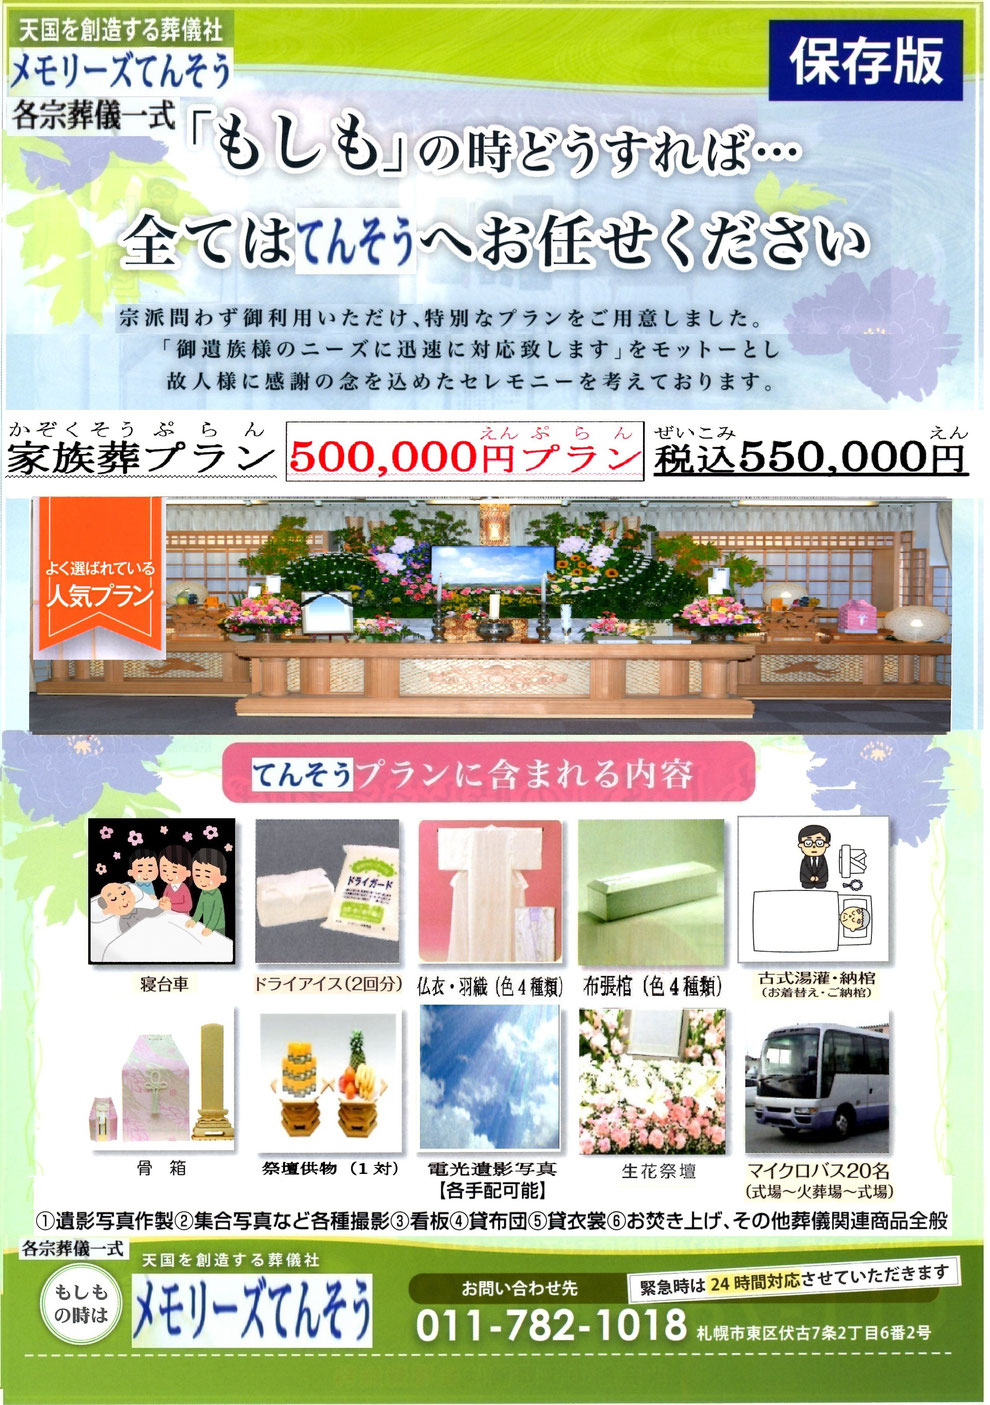 札幌家族葬メモリーズてんそう 葬儀・家族葬550,000円プラン